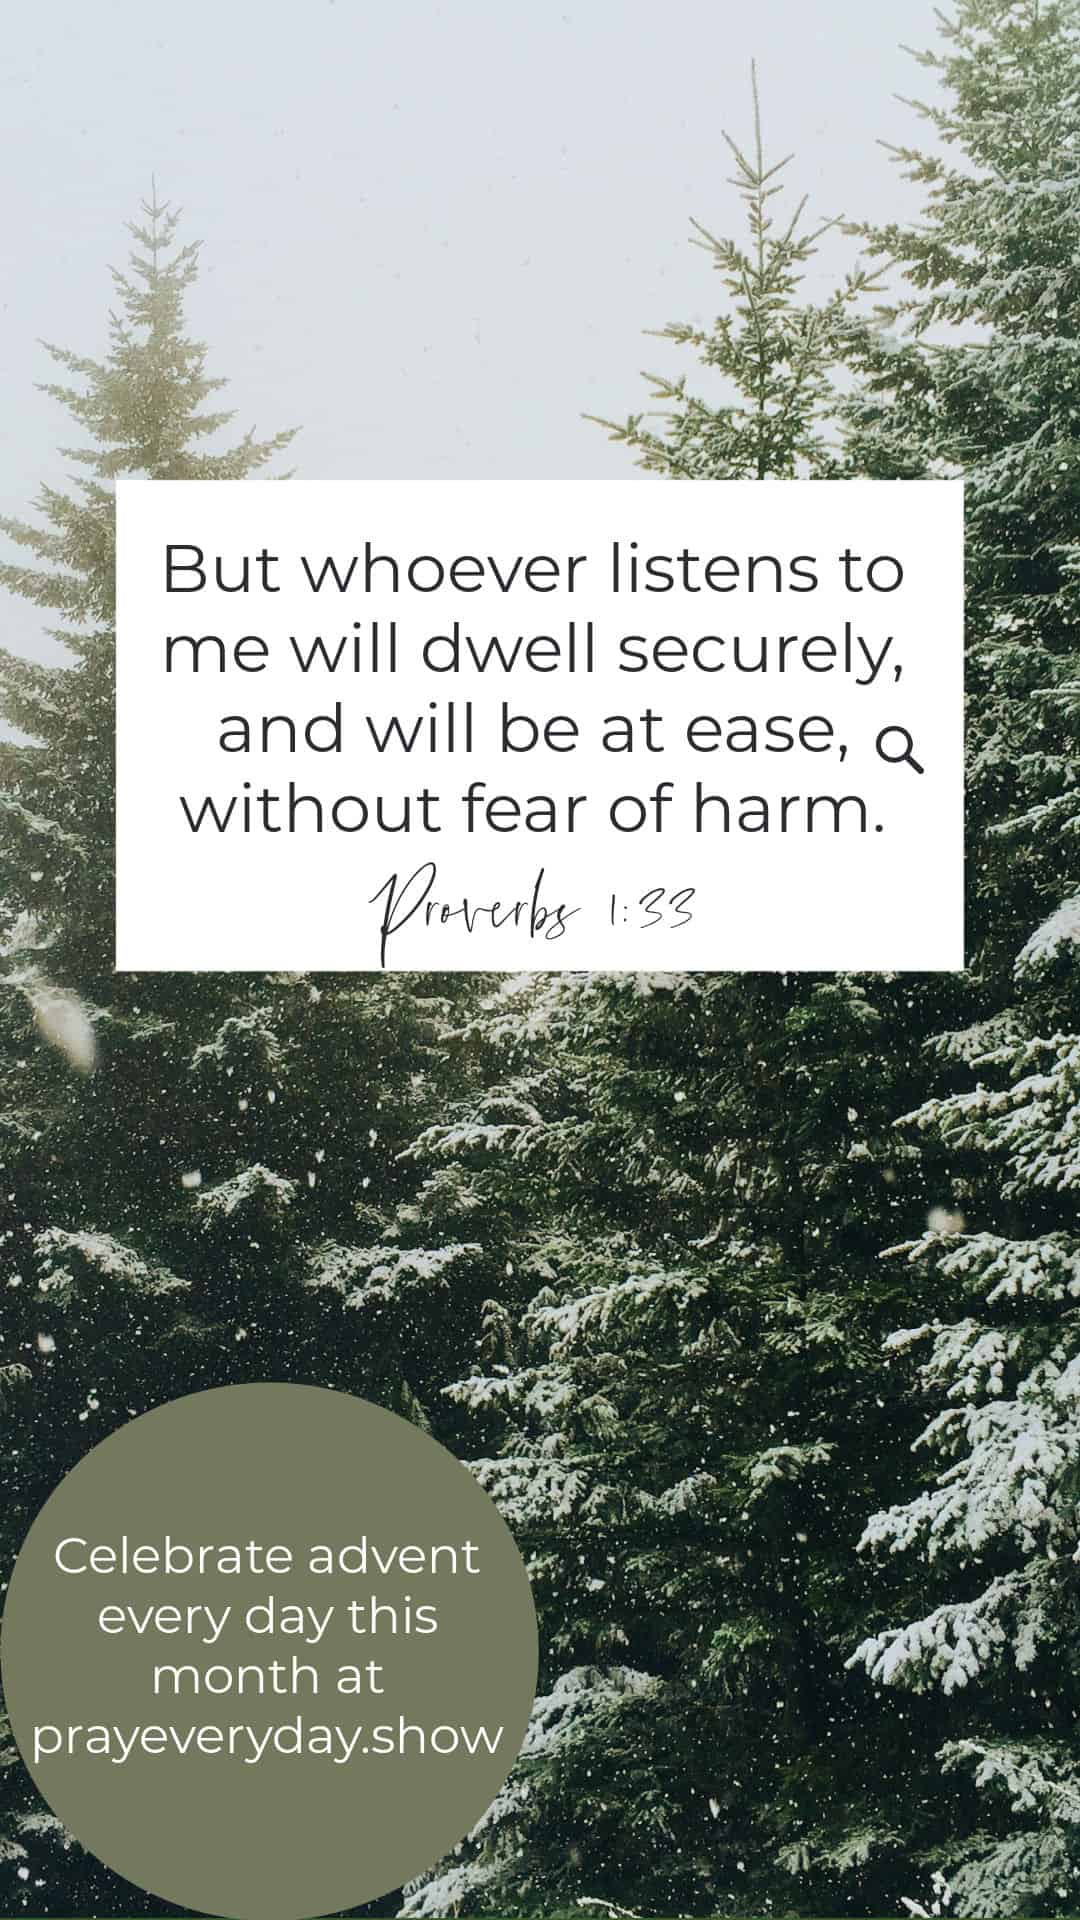 Proverbs 1:16-33